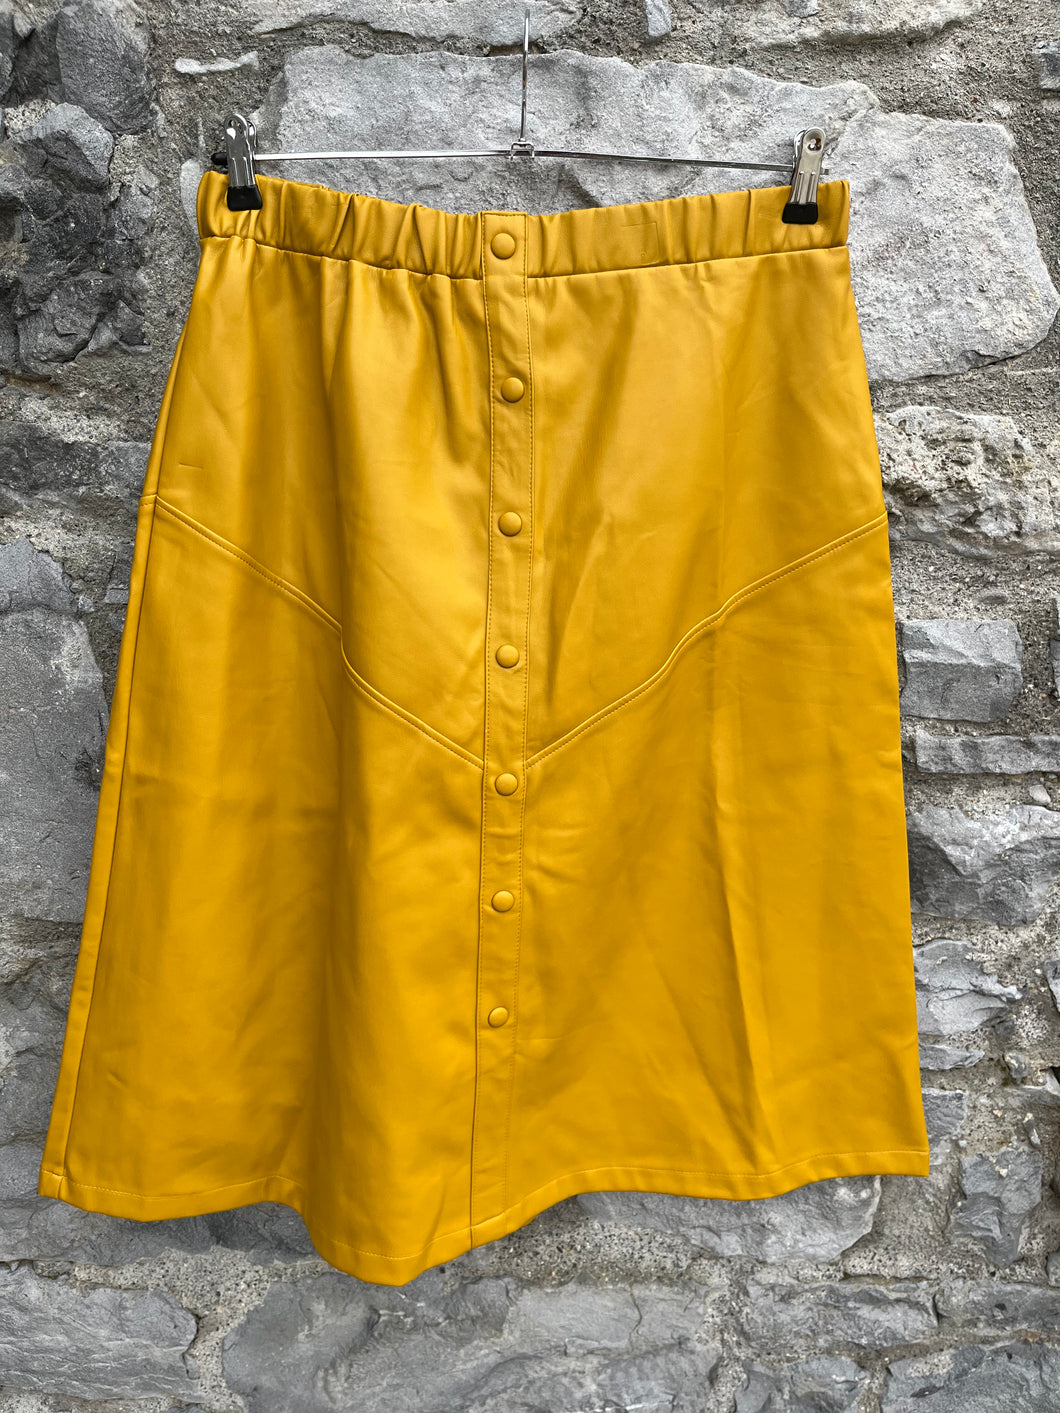 Mustard PVC skirt uk 14-16